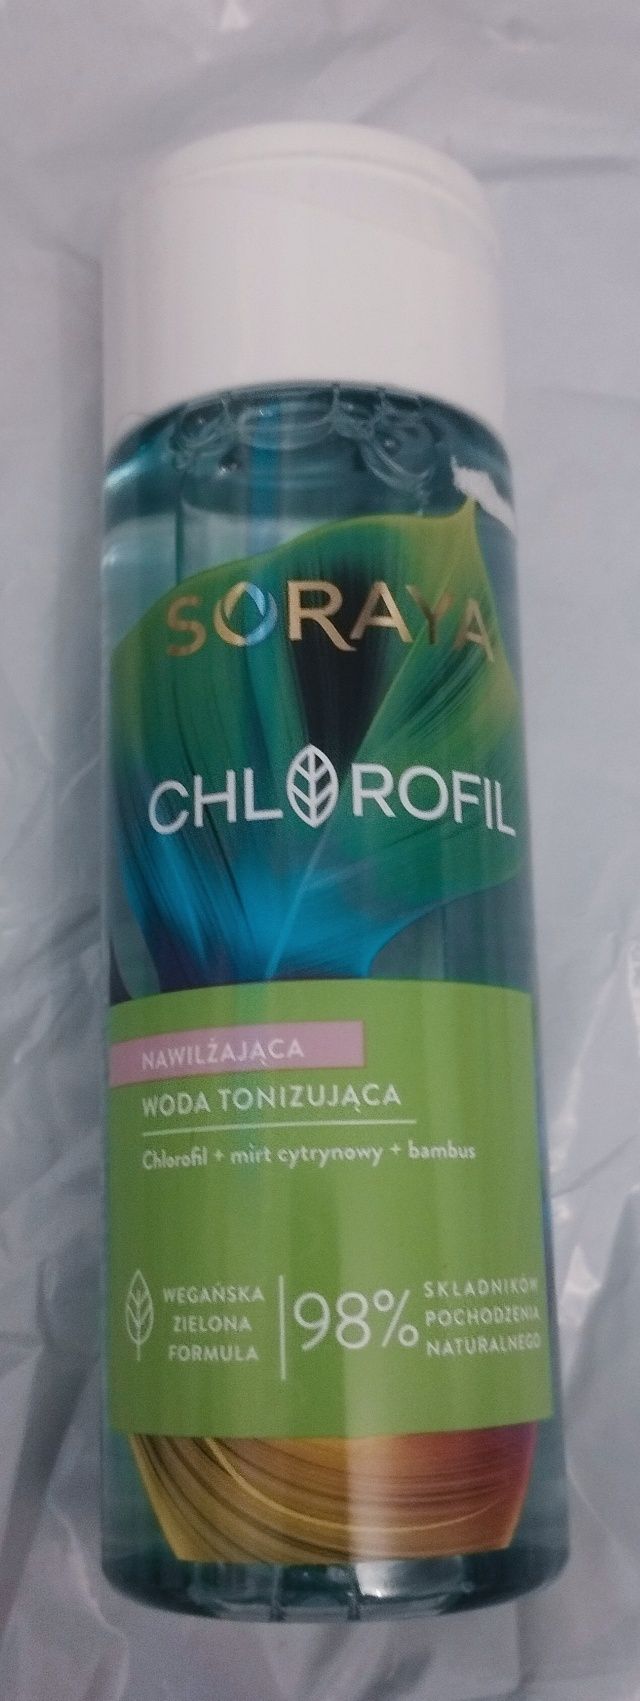 Nowa woda tonizująca nawilżająca Soraya chlorofil 200 ml